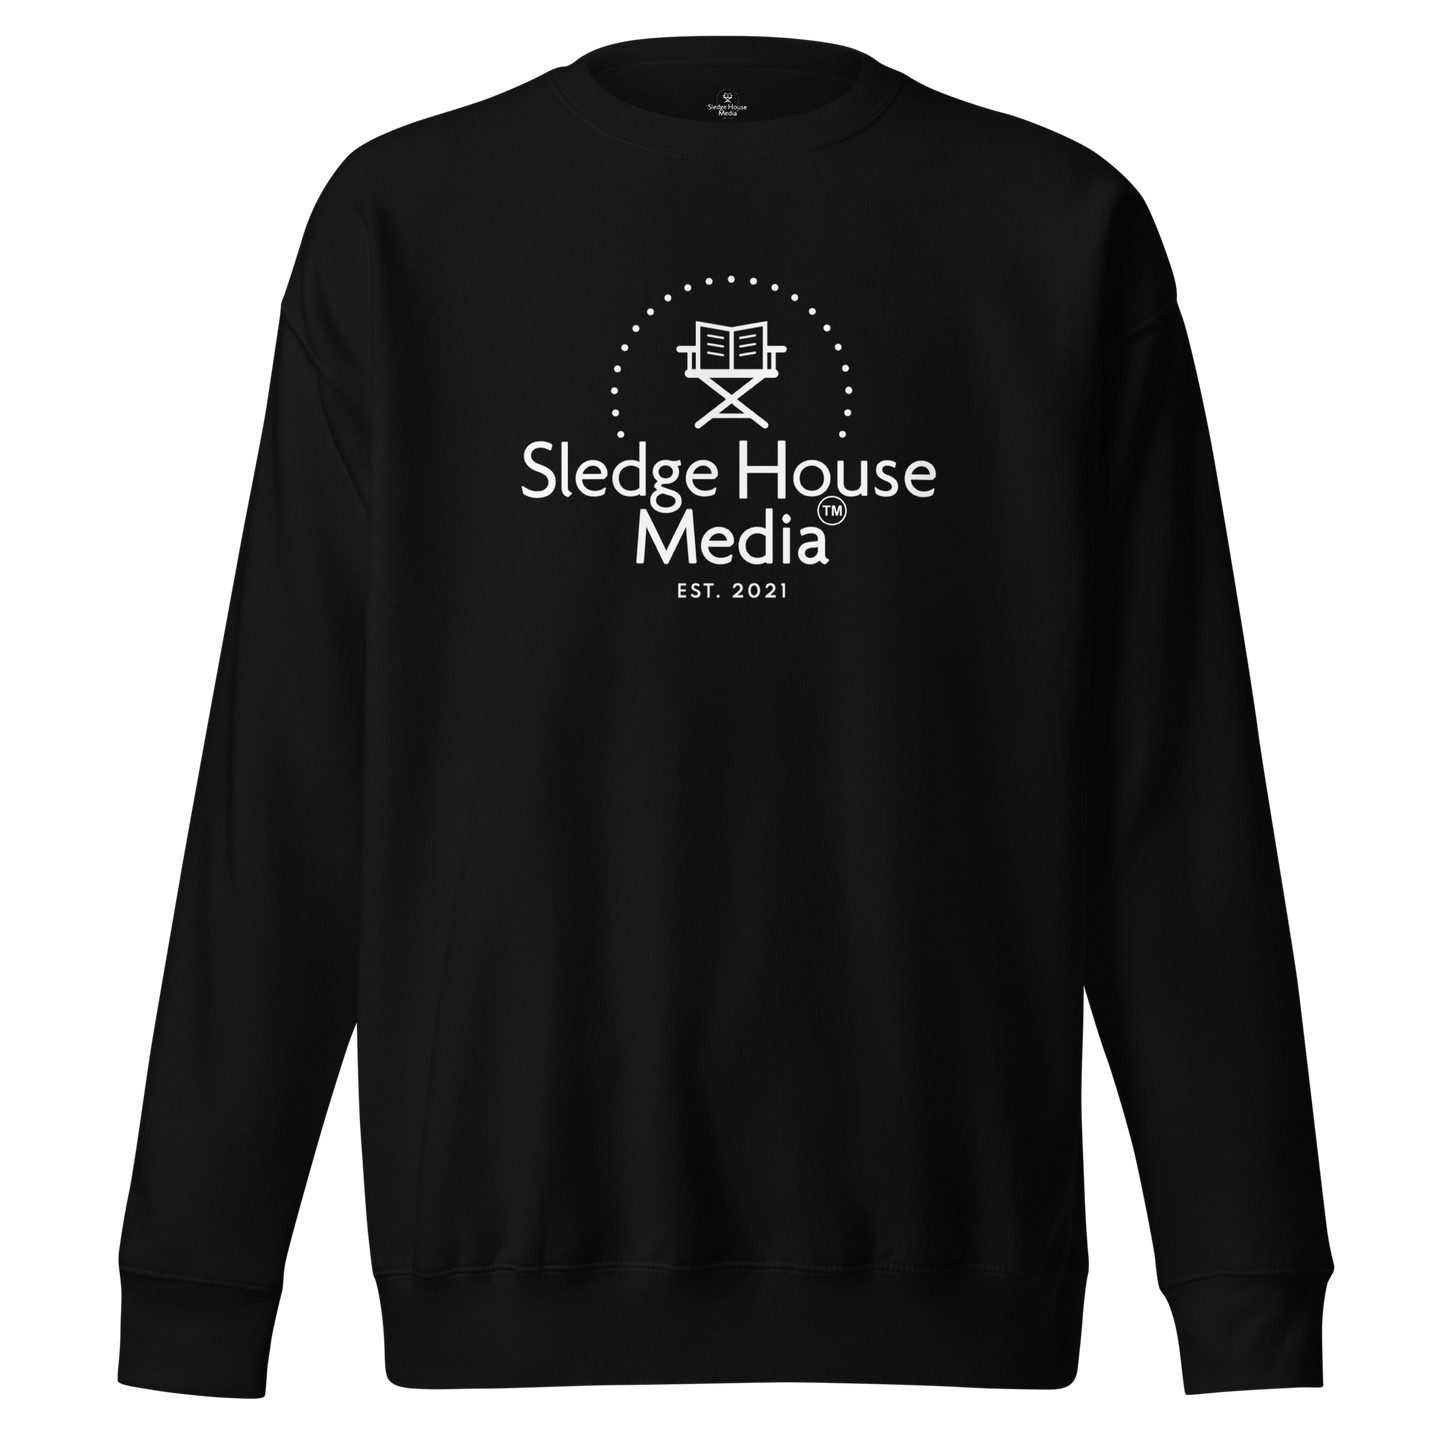 "The OG" Sledge House Media Everyday Cozy Unisex Sweatshirt